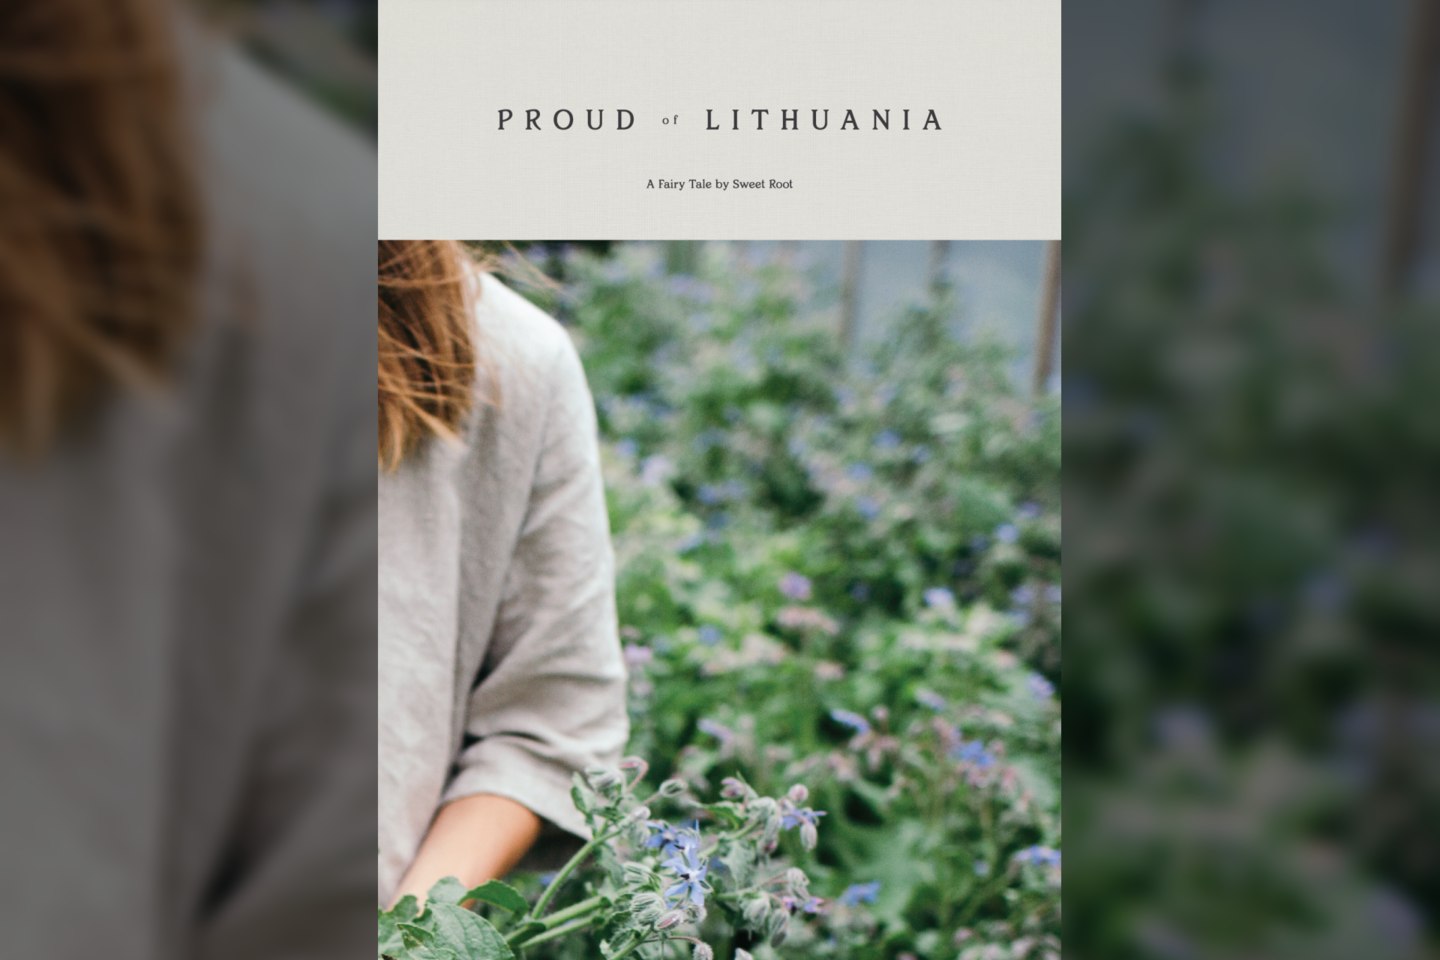 Knyga išskirs ne tik turiniu, bet ir dizainu - turės net 9 skirtingus viršelius, geriausiai atspindinčius Lietuvos gamtos grožį